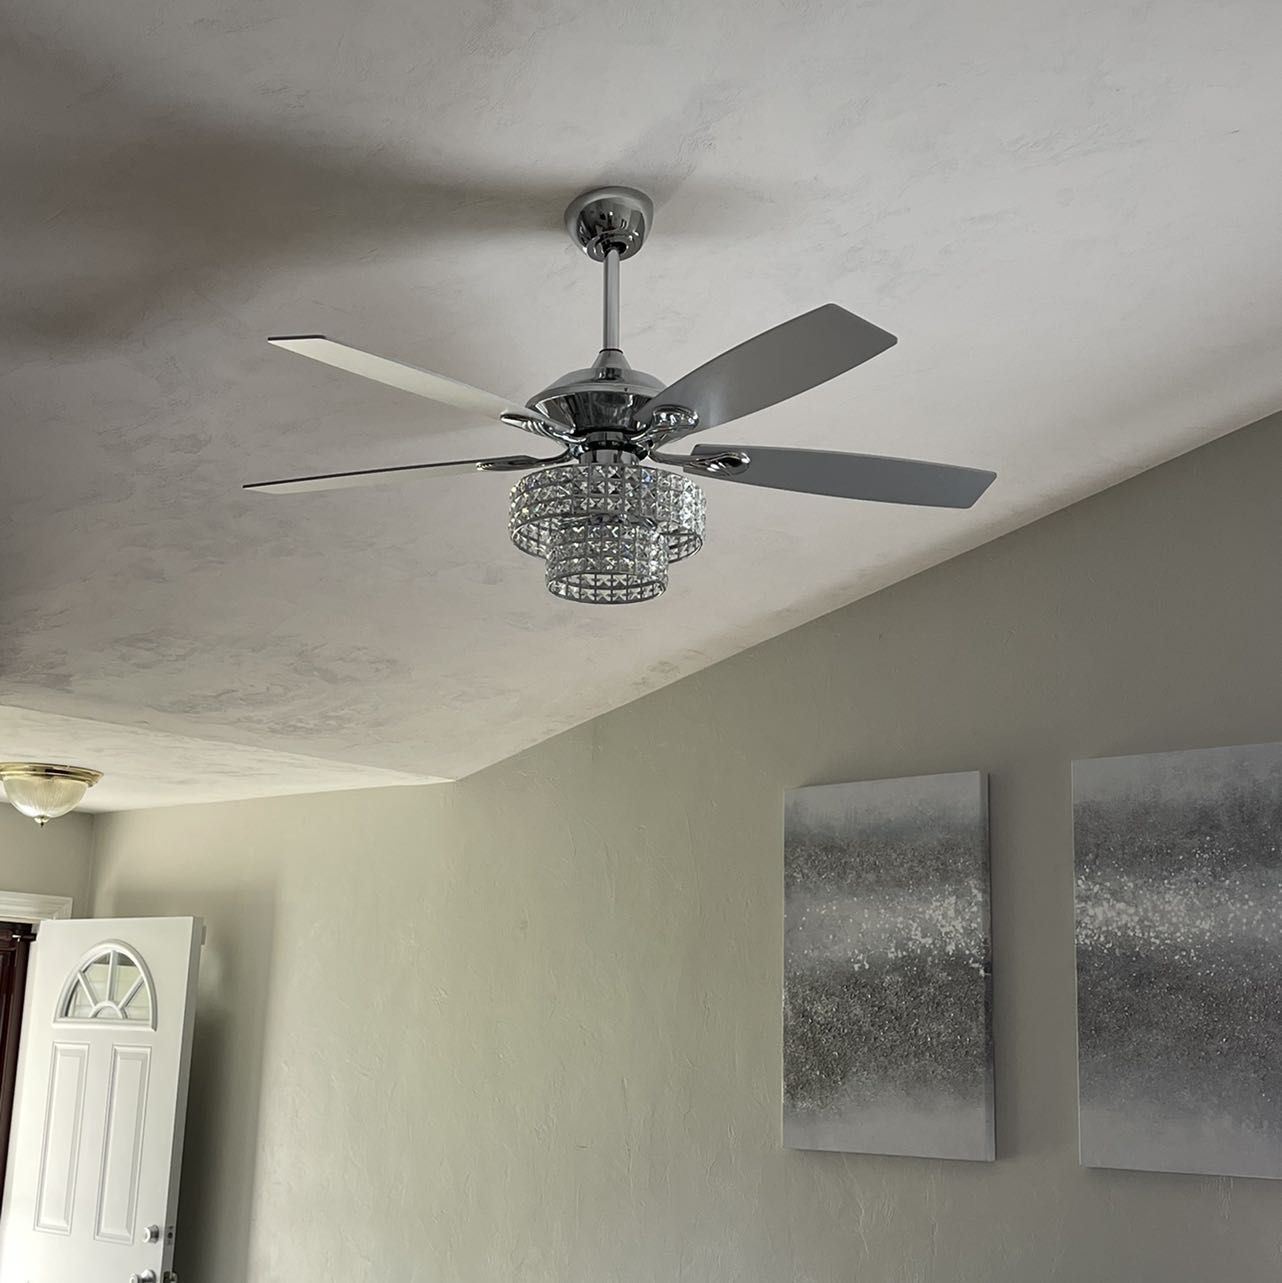 Light fixtures / chandeliers/ceiling fans portfolio